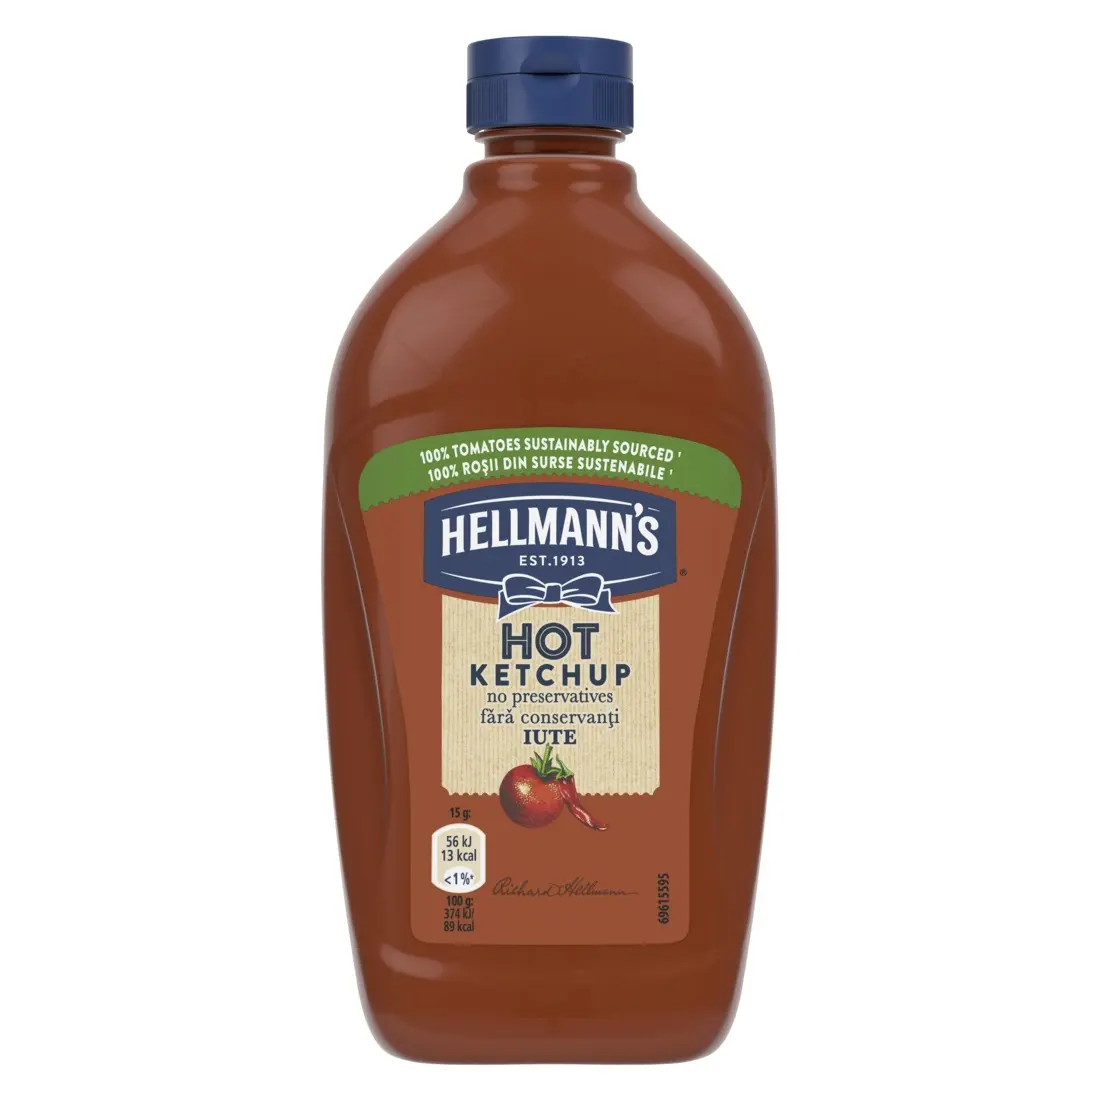 Ketchup iute Hellmann's, 470g